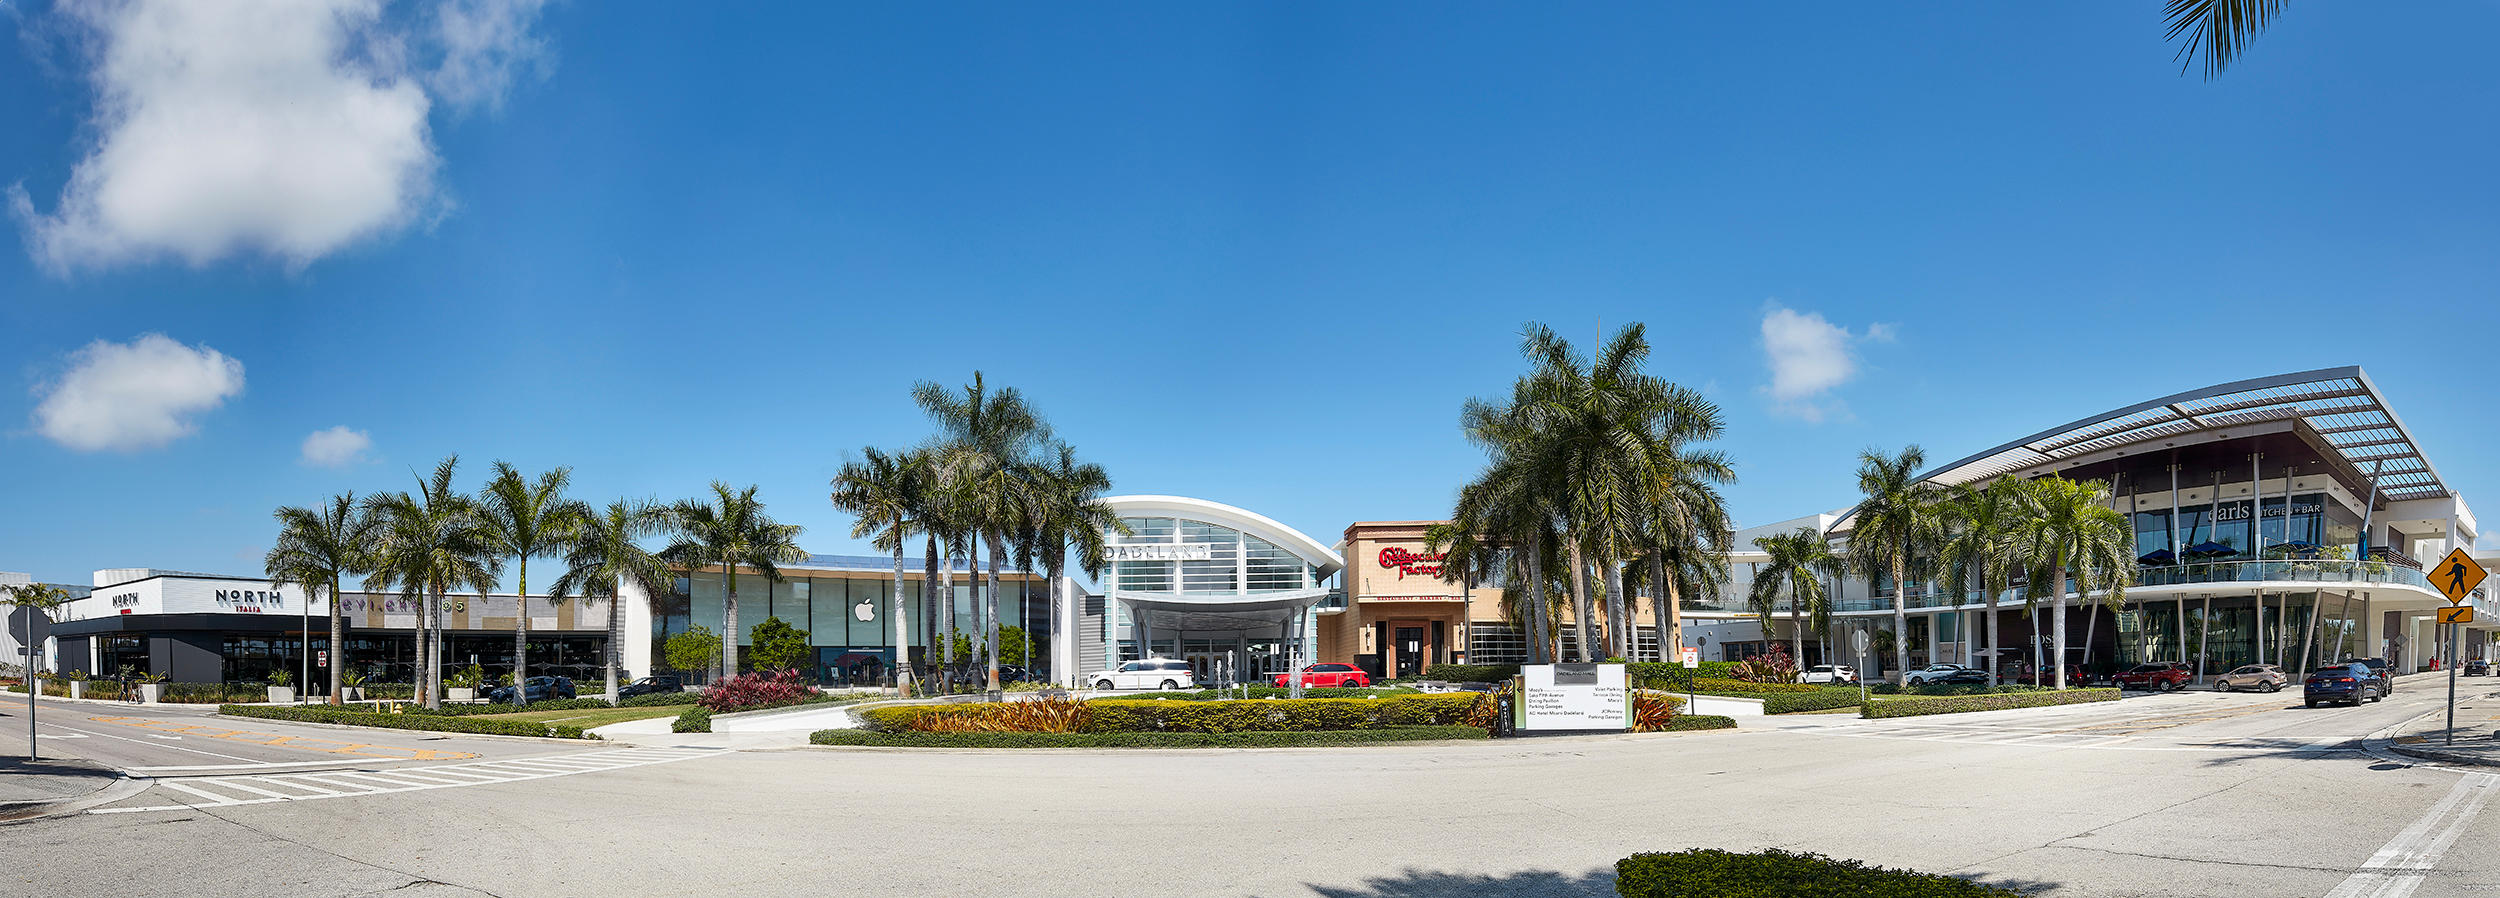 Zara at Dadeland Mall - A Shopping Center in Miami, FL - A Simon